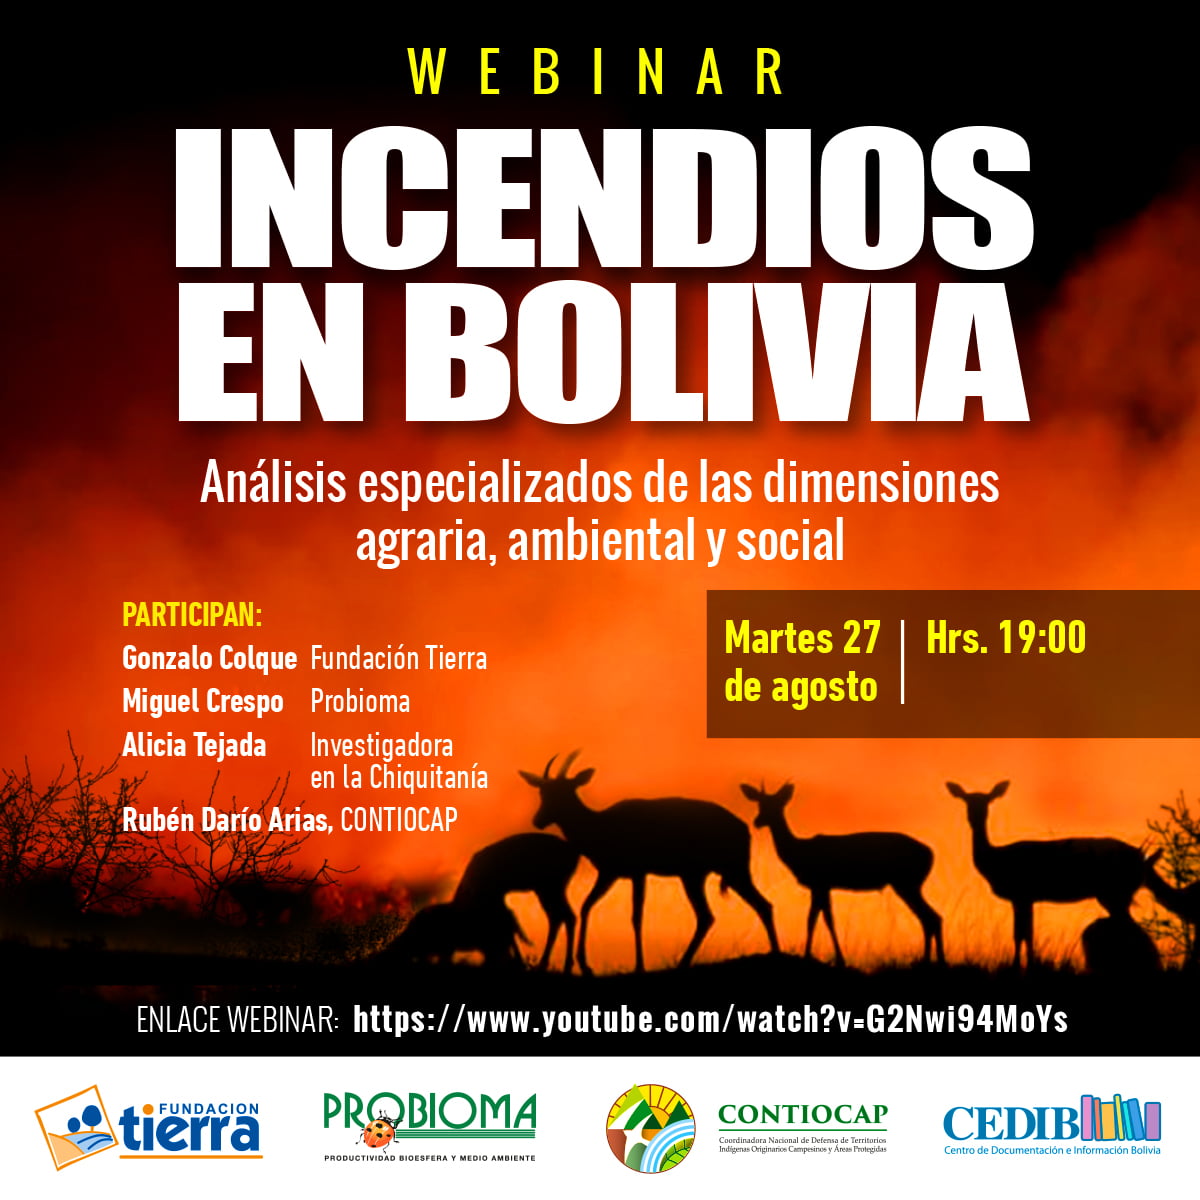 Incendios en Bolivia. Análisis especializados